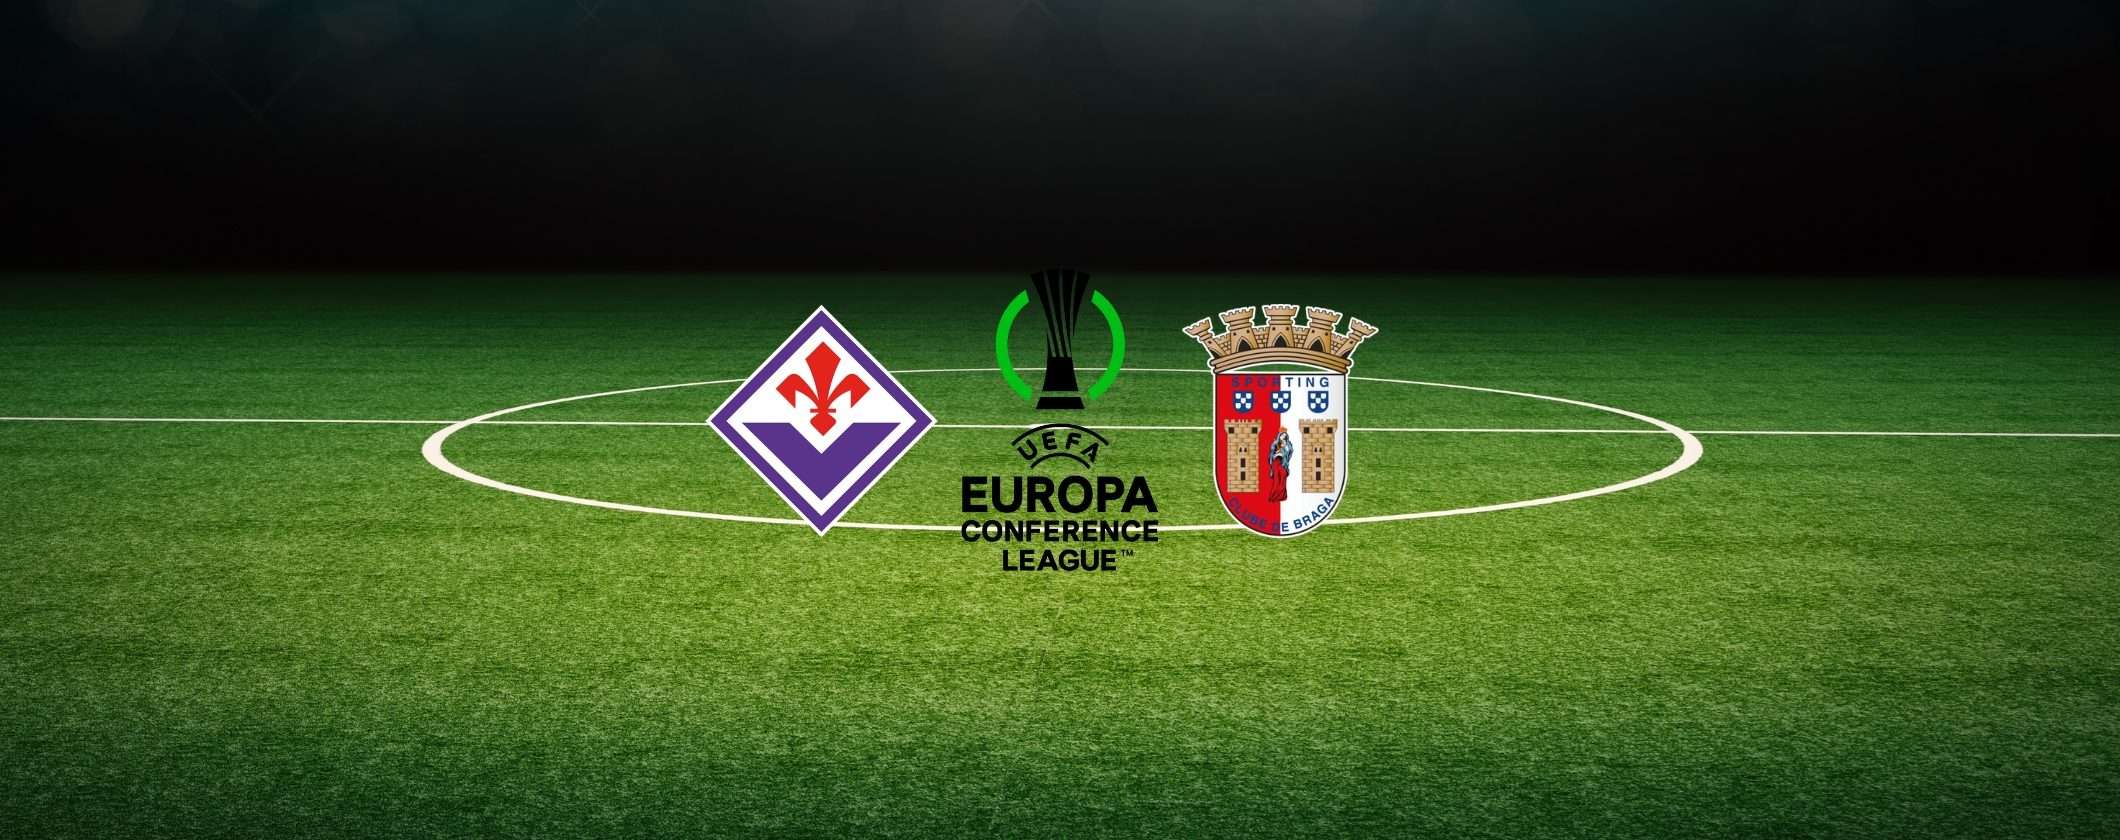 Guarda subito Fiorentina-Sporting Braga in streaming